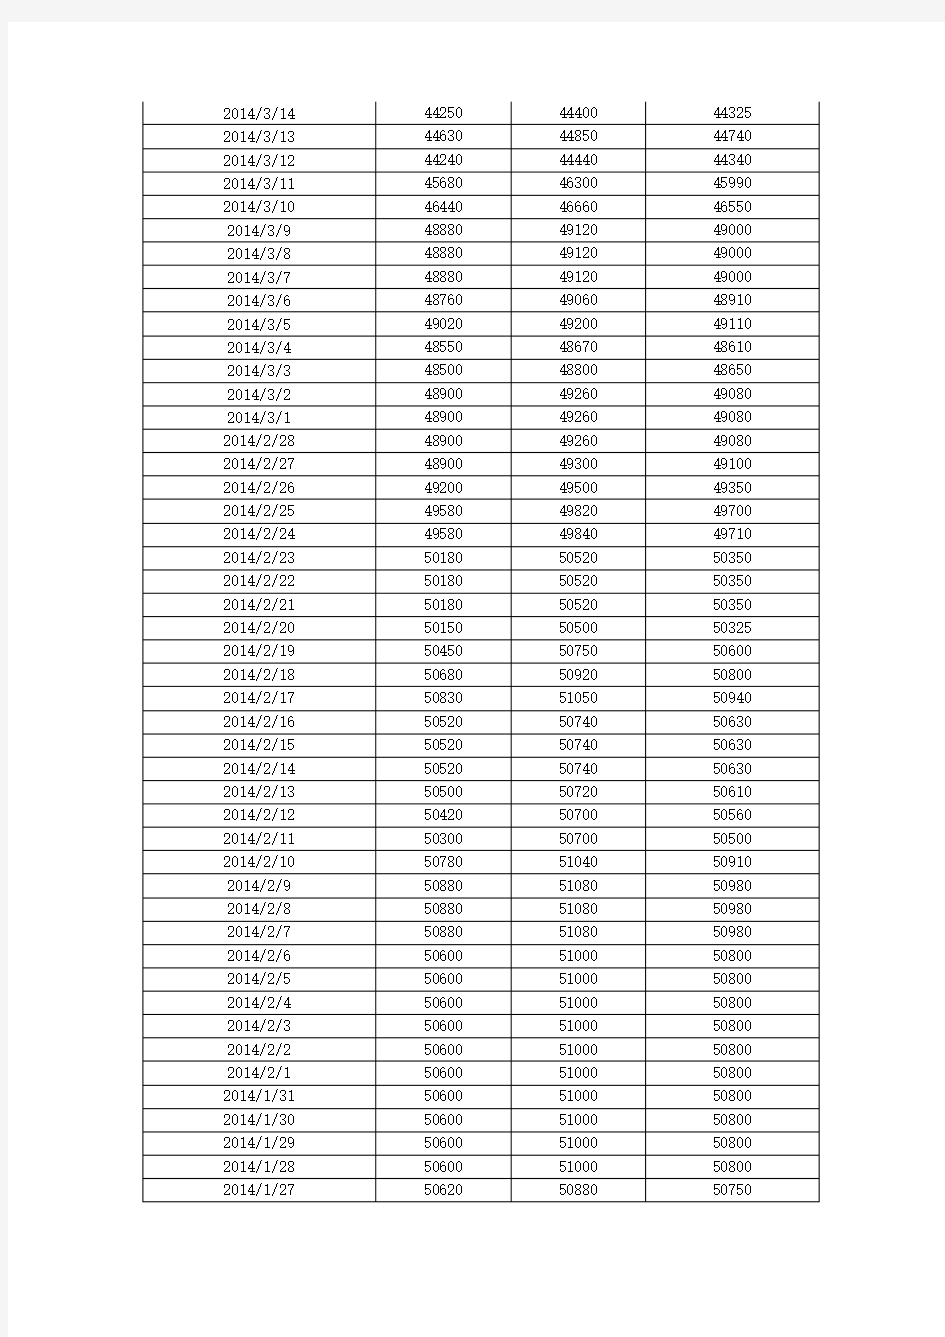 2007年至2014年4月底有色金属铜上海现货每日价格数据汇总